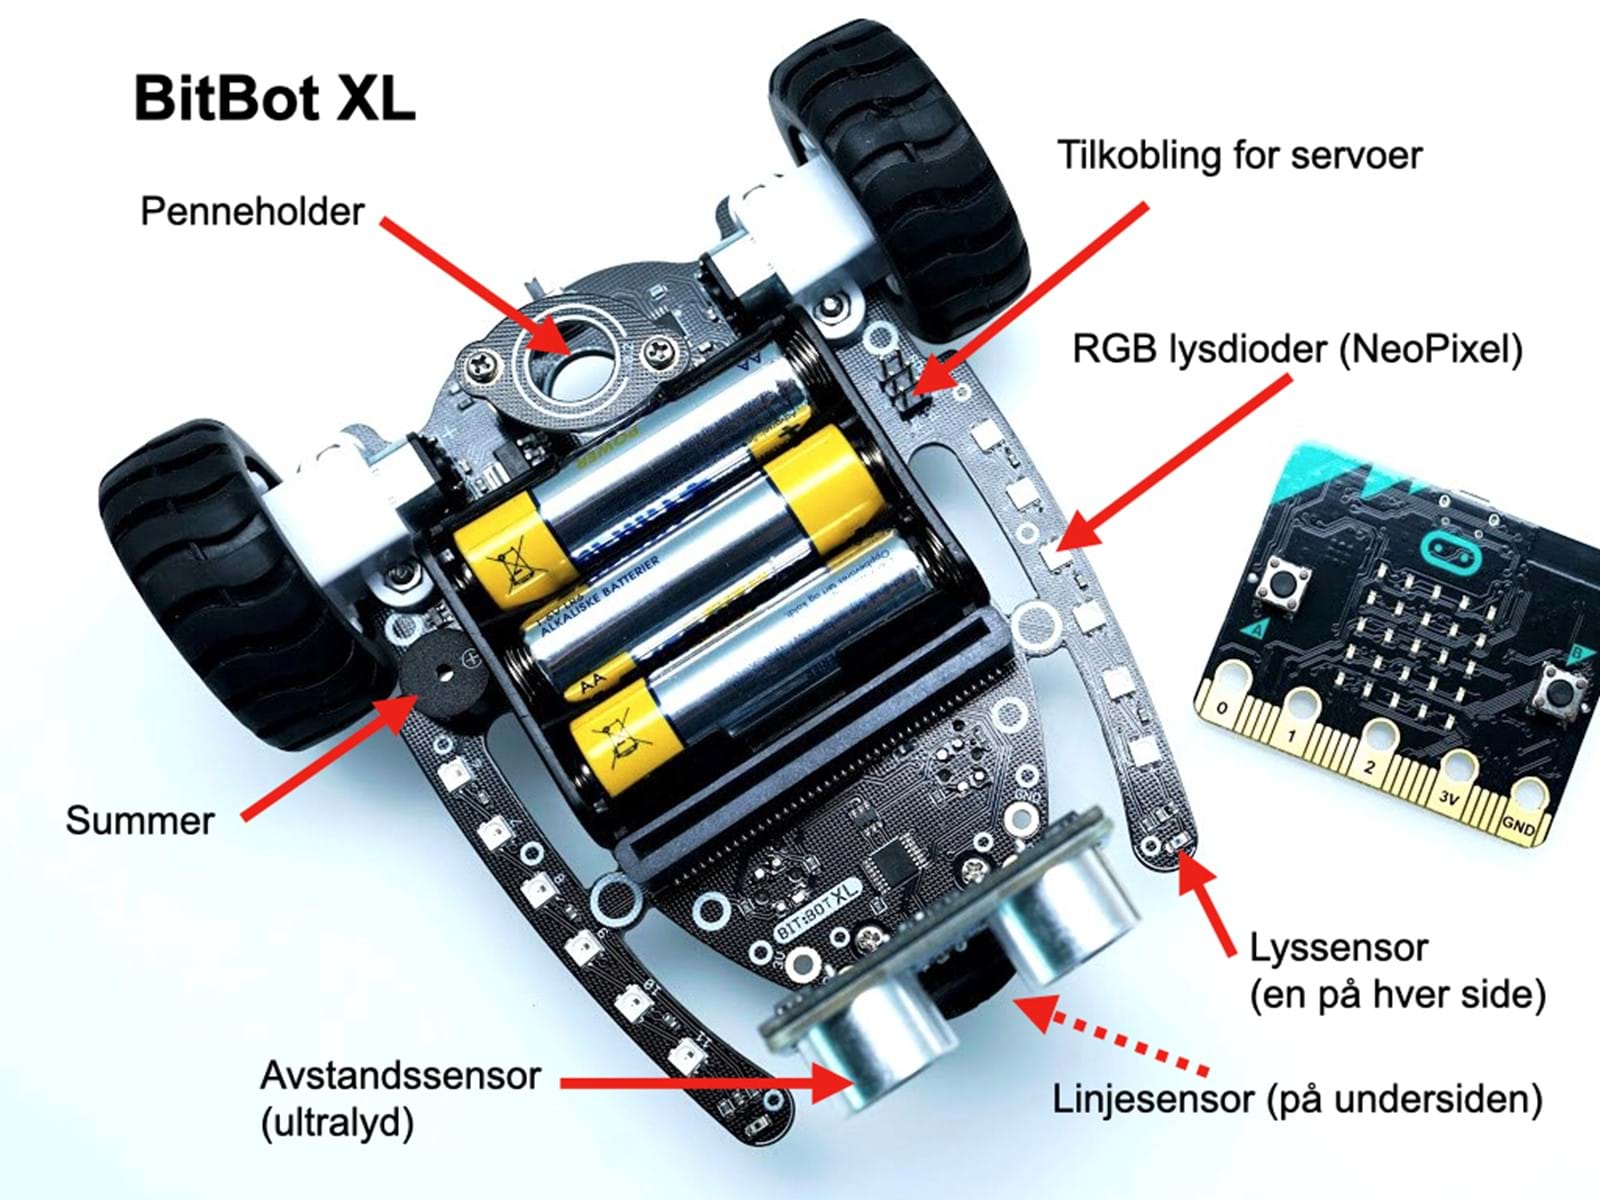 Roboten BitBot XL har mange funksjoner og tilbehør du utforske og bruke kreativt